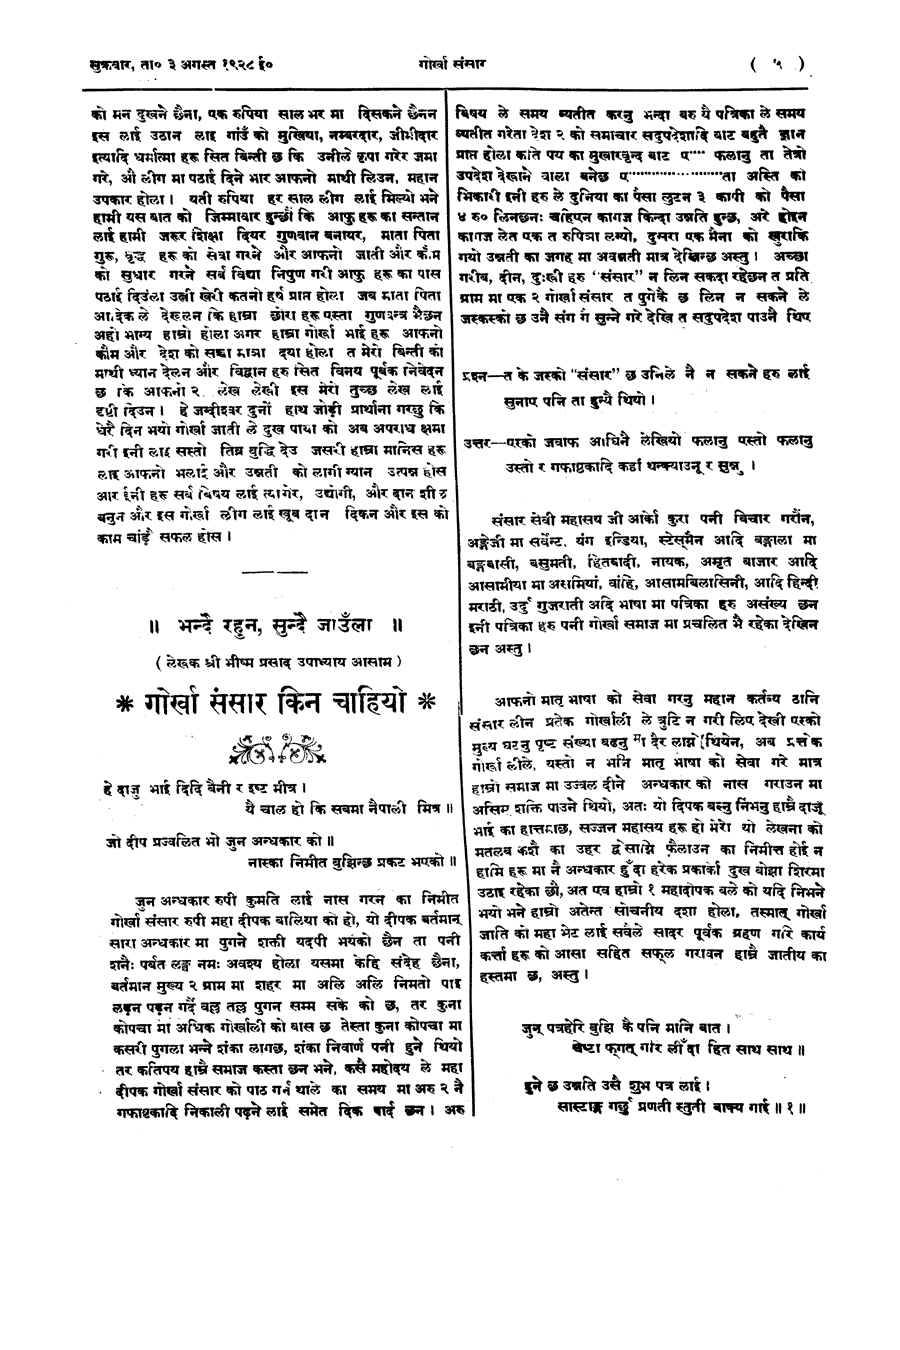 Gorkha Sansar, 3 Aug 1928, page 5